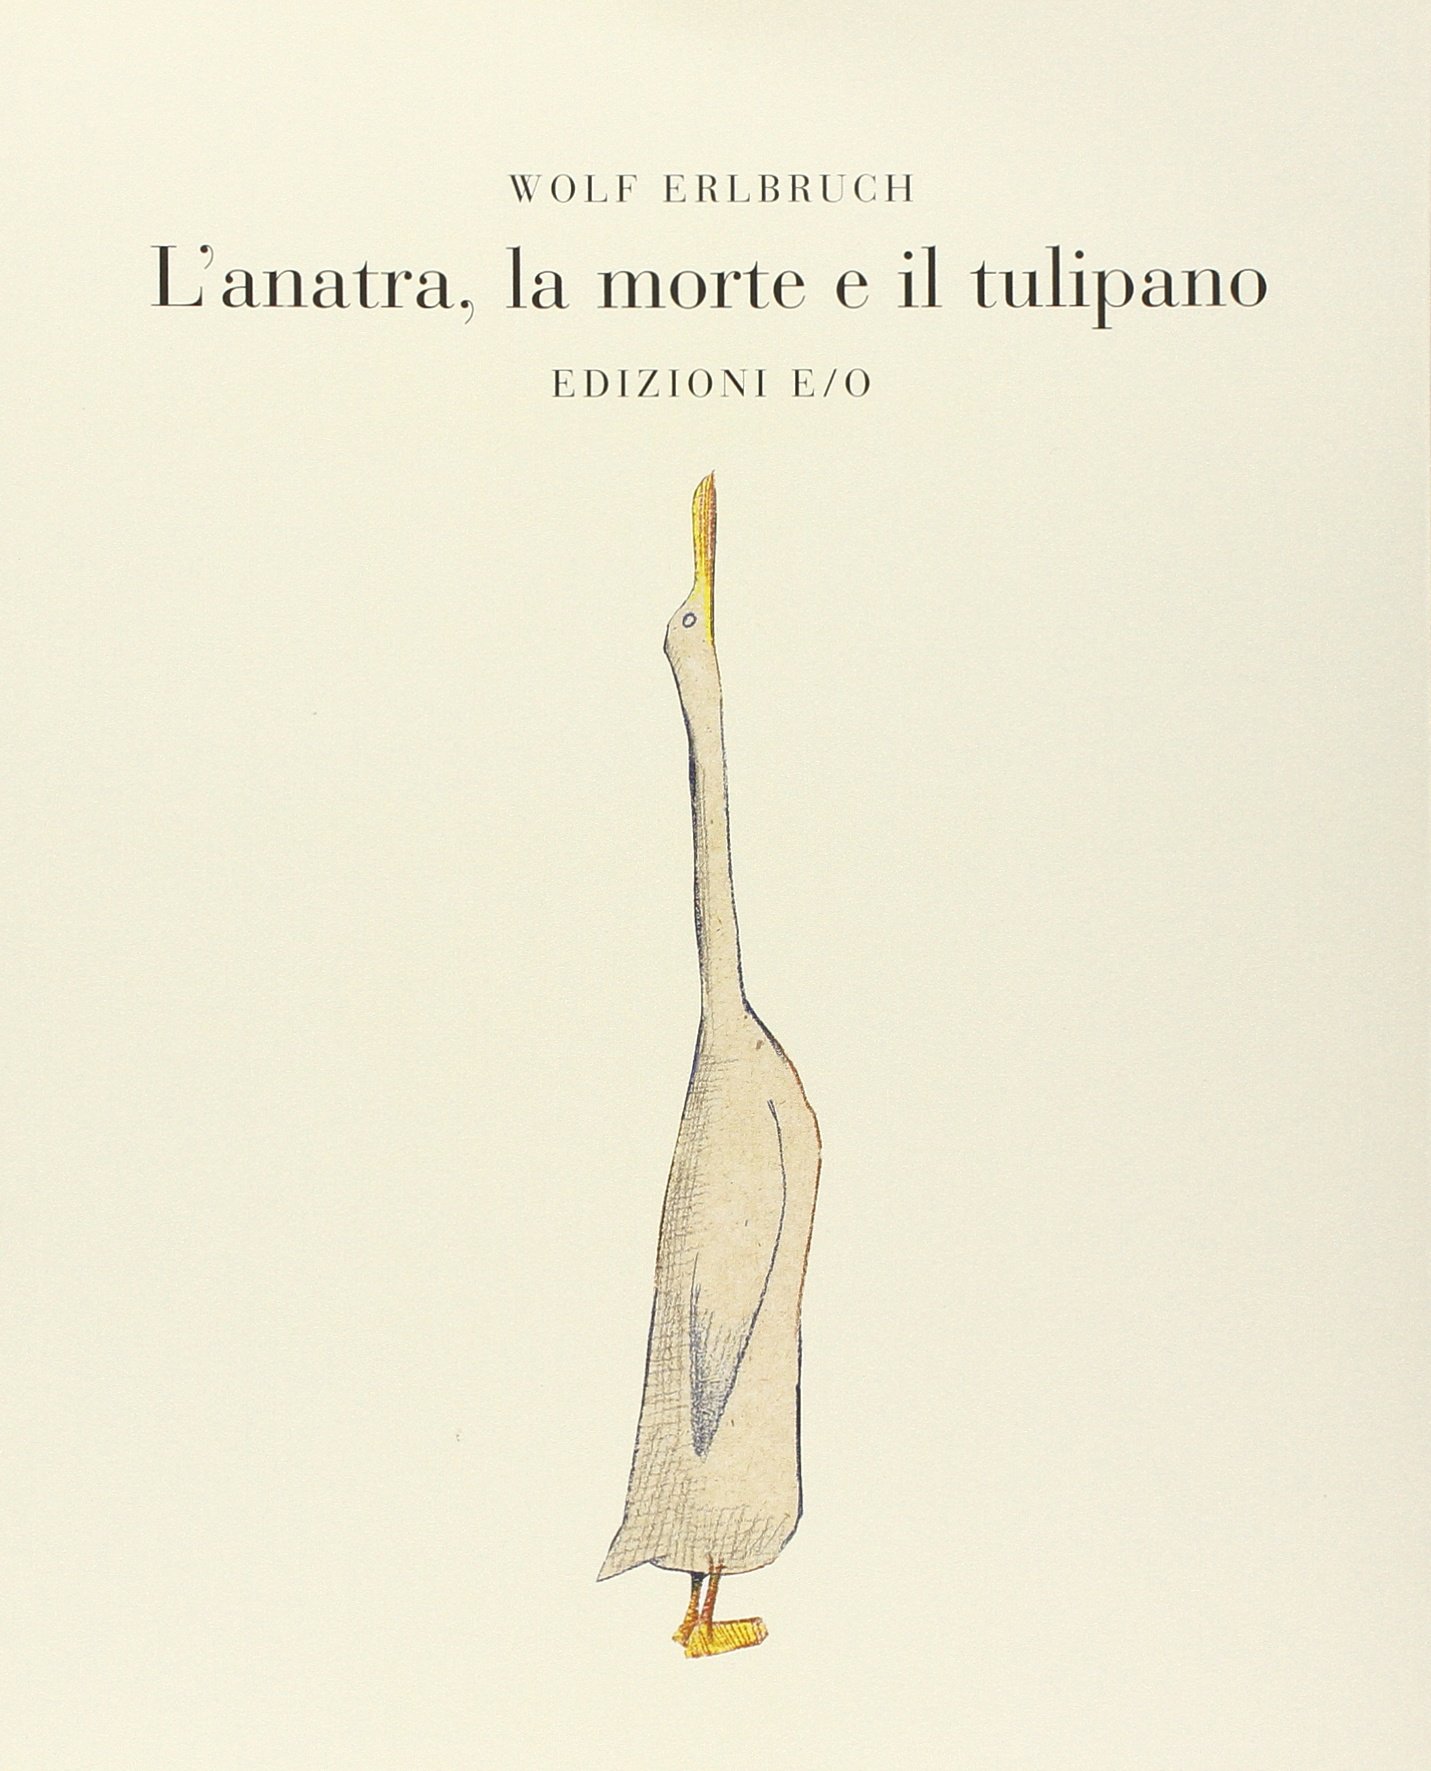 Wolf E. (2007). L’anatra, la morte e il tulipano. E/O, Roma